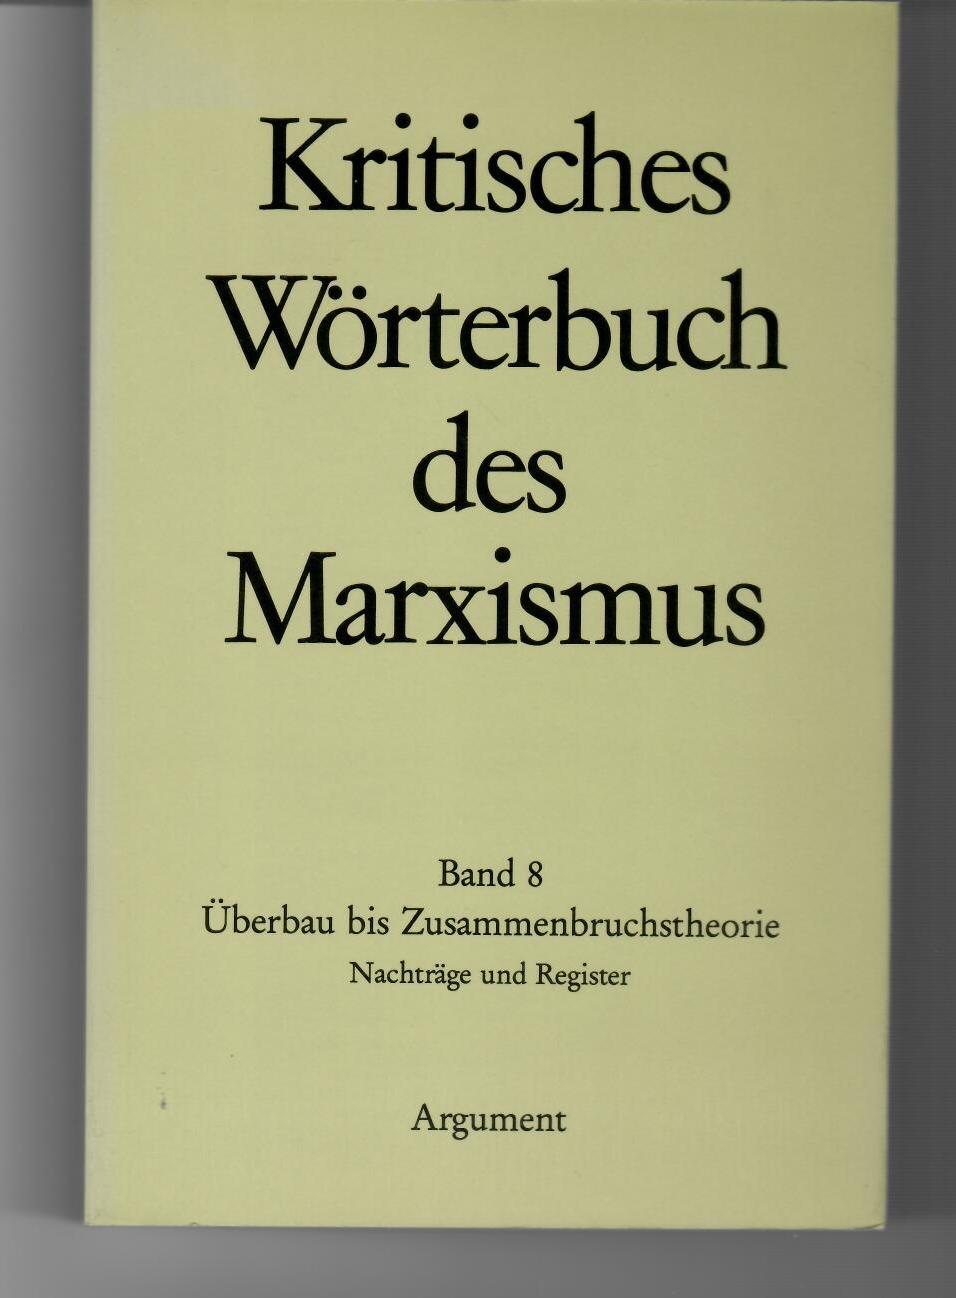 Kritisches Wörterbuch des Marxismus VIII. Überbau - Zusammenbruchstheorie